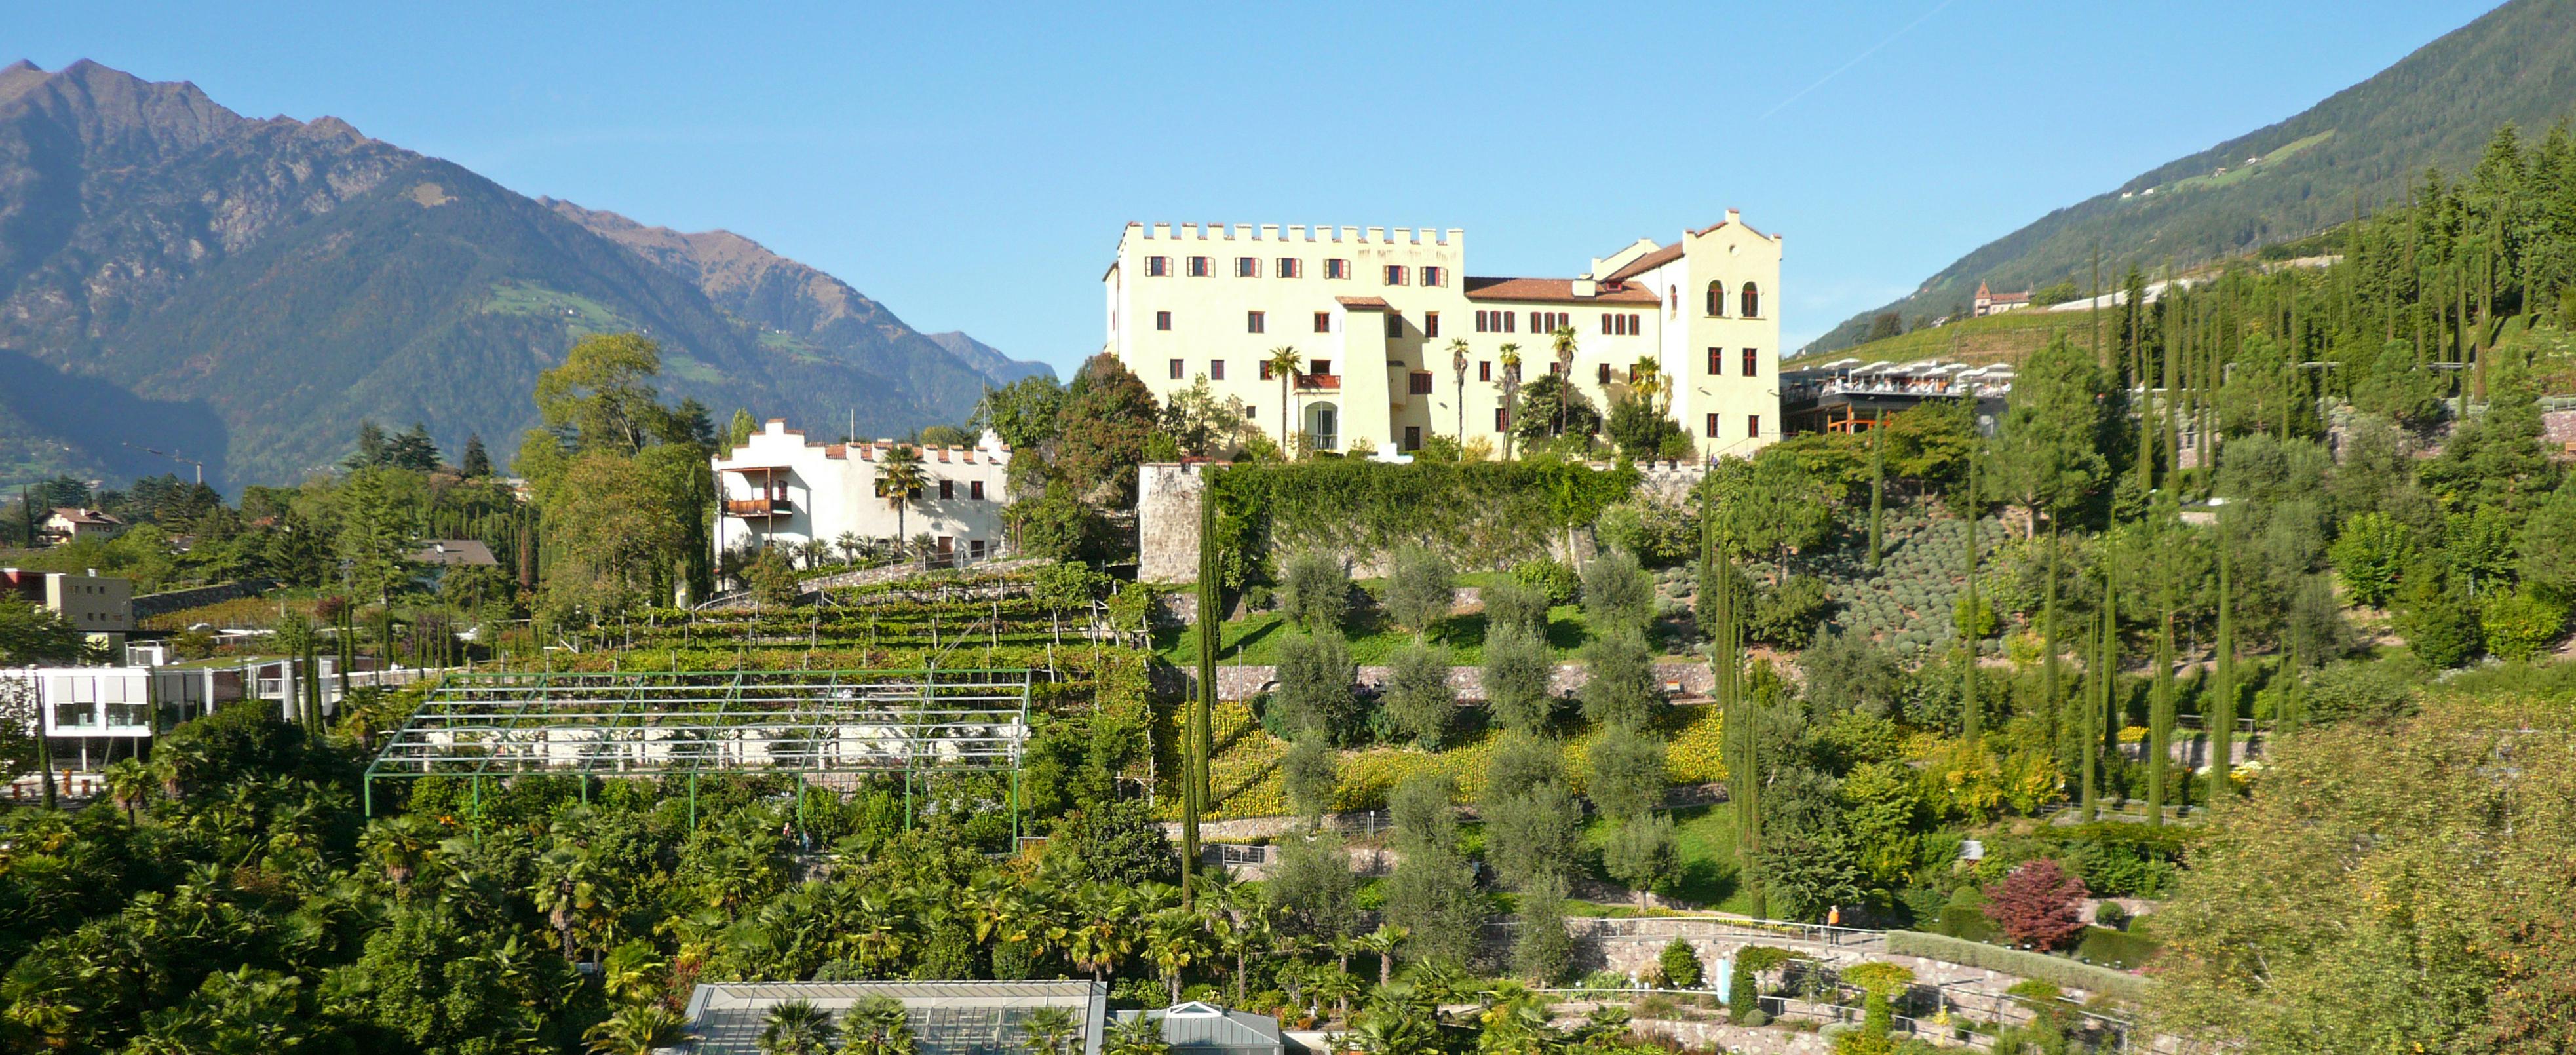 Gartennächte in den Gärten von Schloss Trauttmansdorff bei Meran, Südtirol